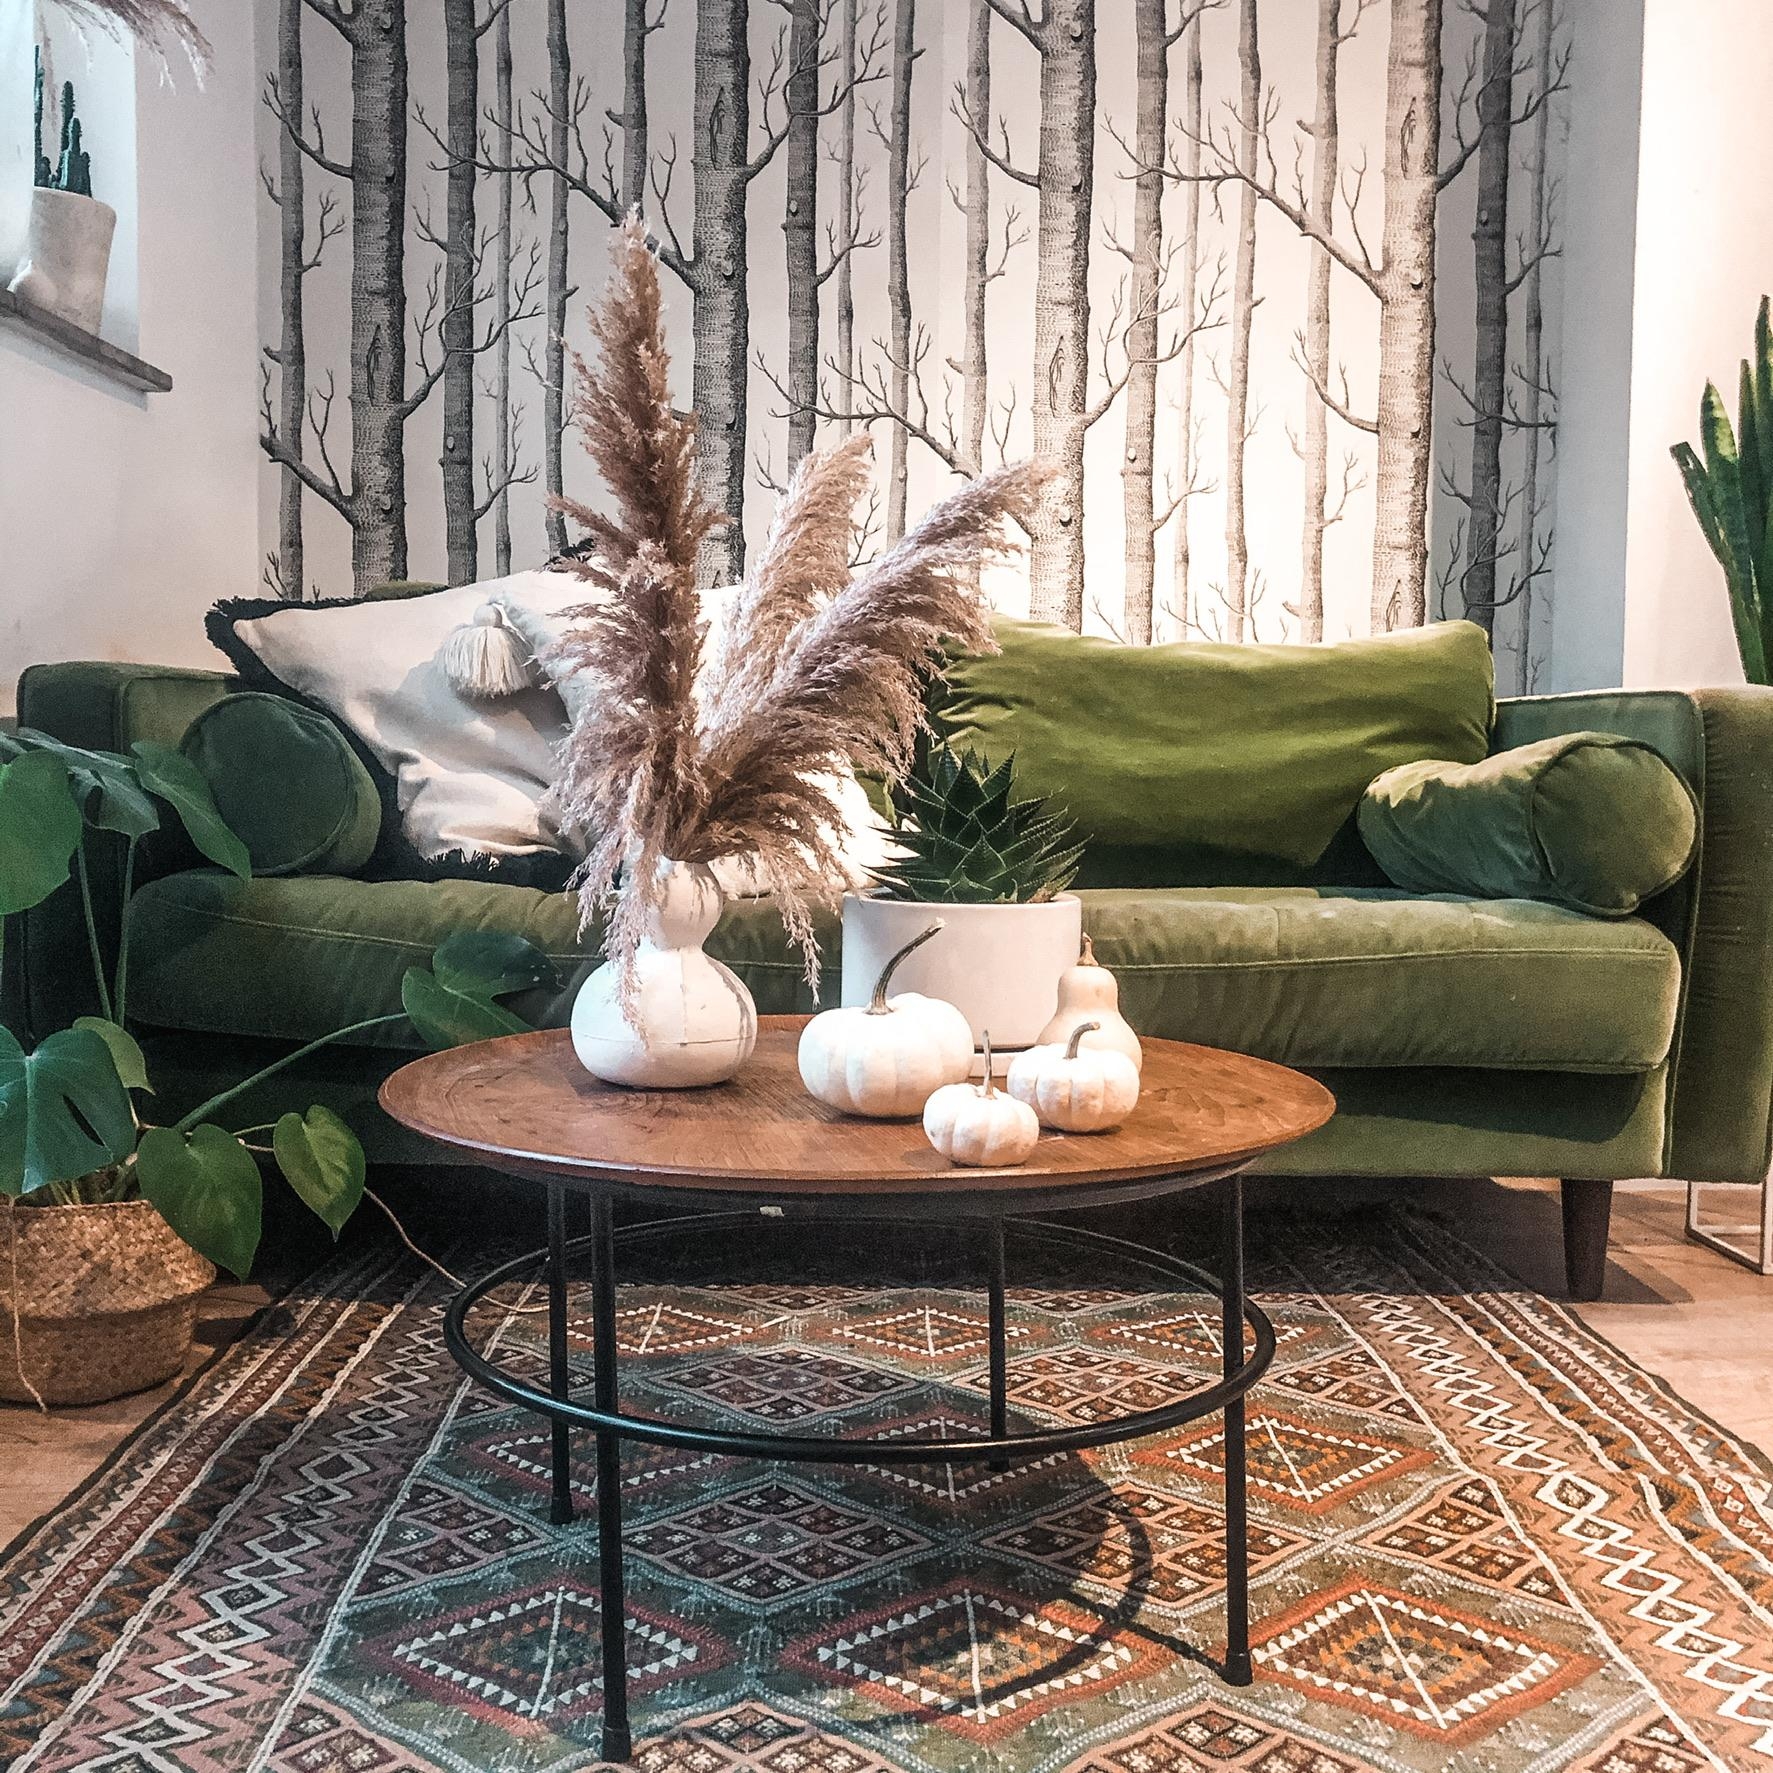 Unsere Lieblingsecke mal wieder mit neuer Deko #samtsofa #grünessofa #lieblingsplatz #interiordesign